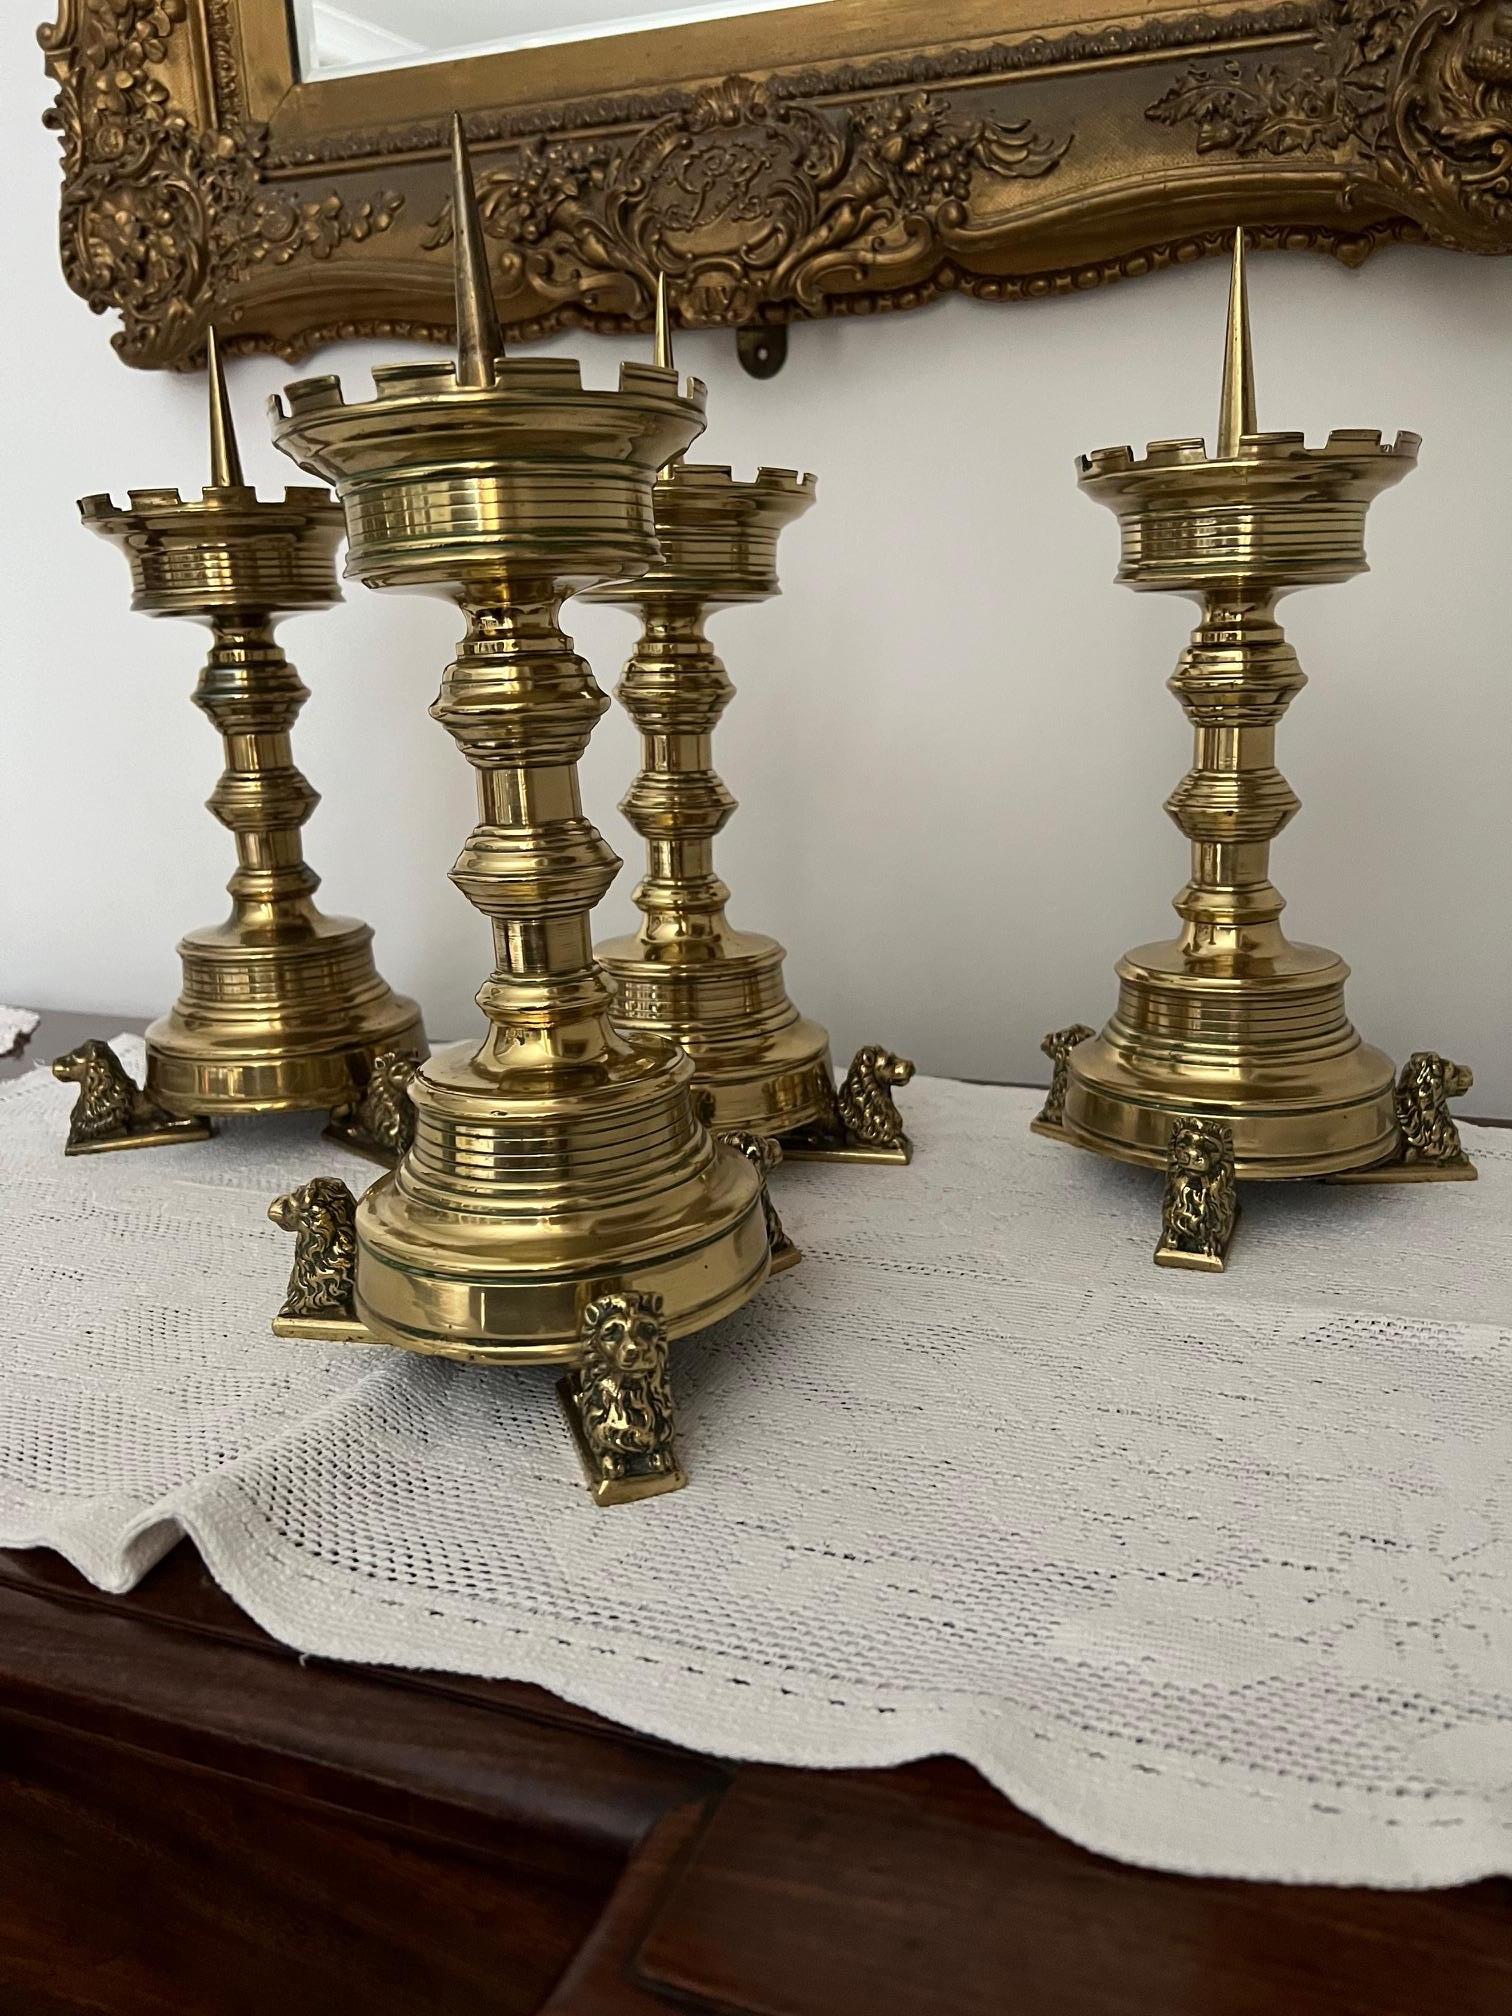 Quatre chandeliers hollandais en laiton du 19e siècle, avec des sommets crénelés. 

Tous ont signé sur les socles des lions. 
Signé avec ce qui semble être 